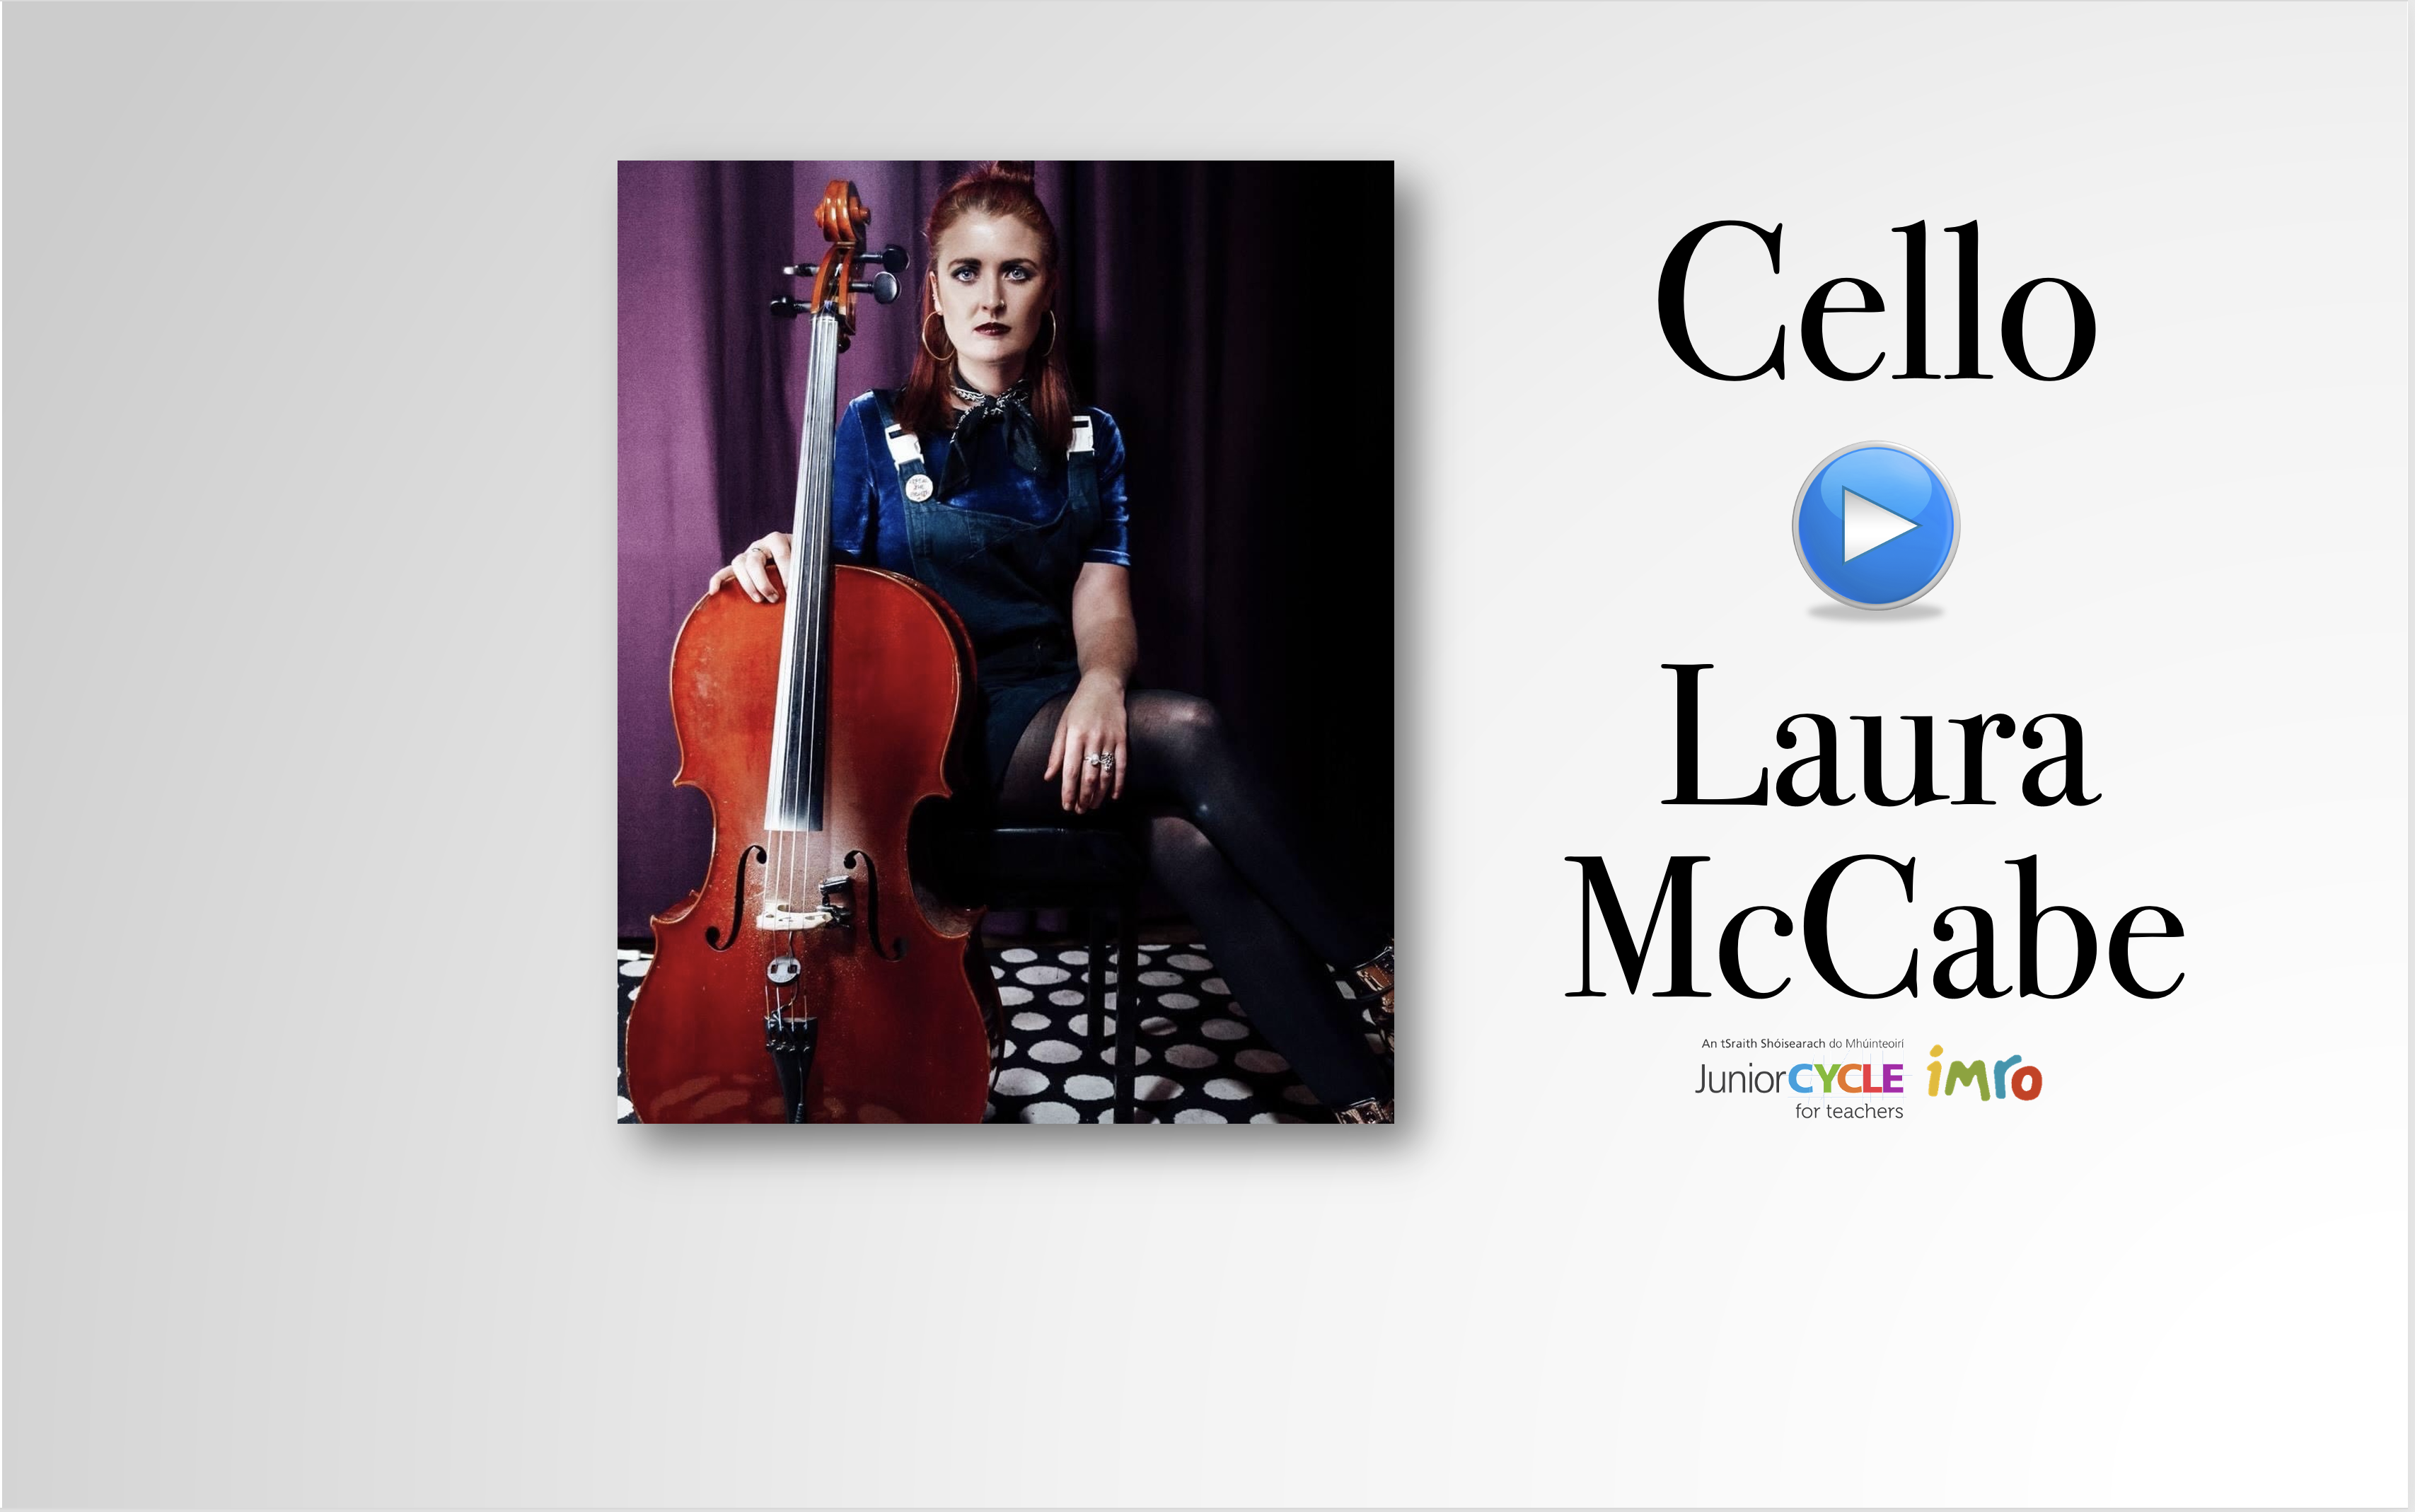 Meet the Cello